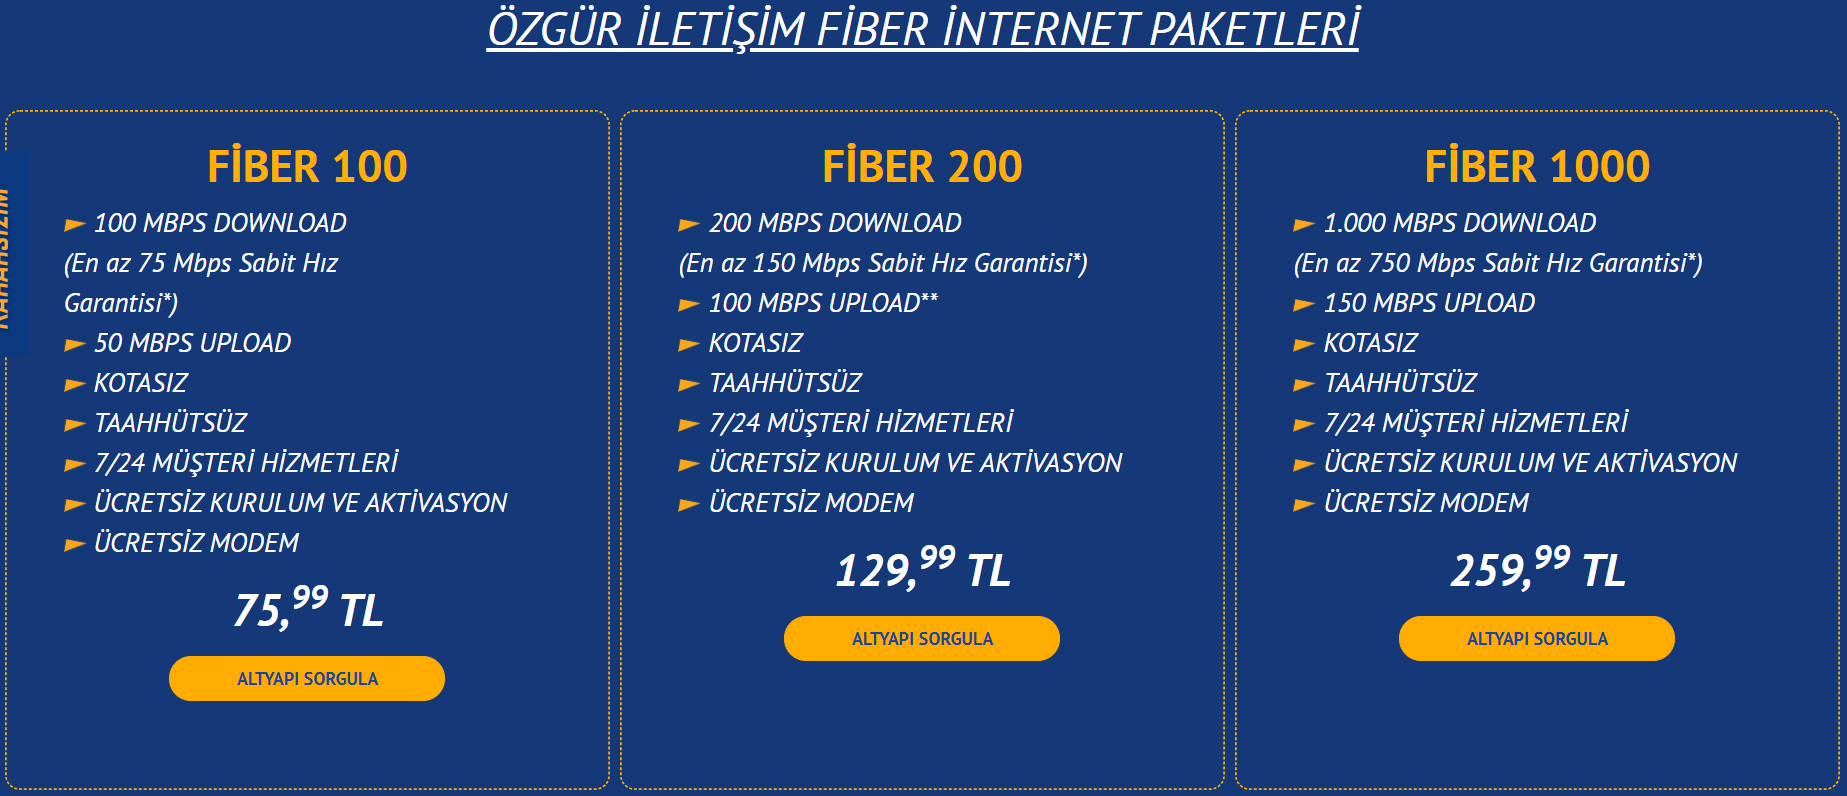 turknet in yeni fiber paketleri donanimhaber forum